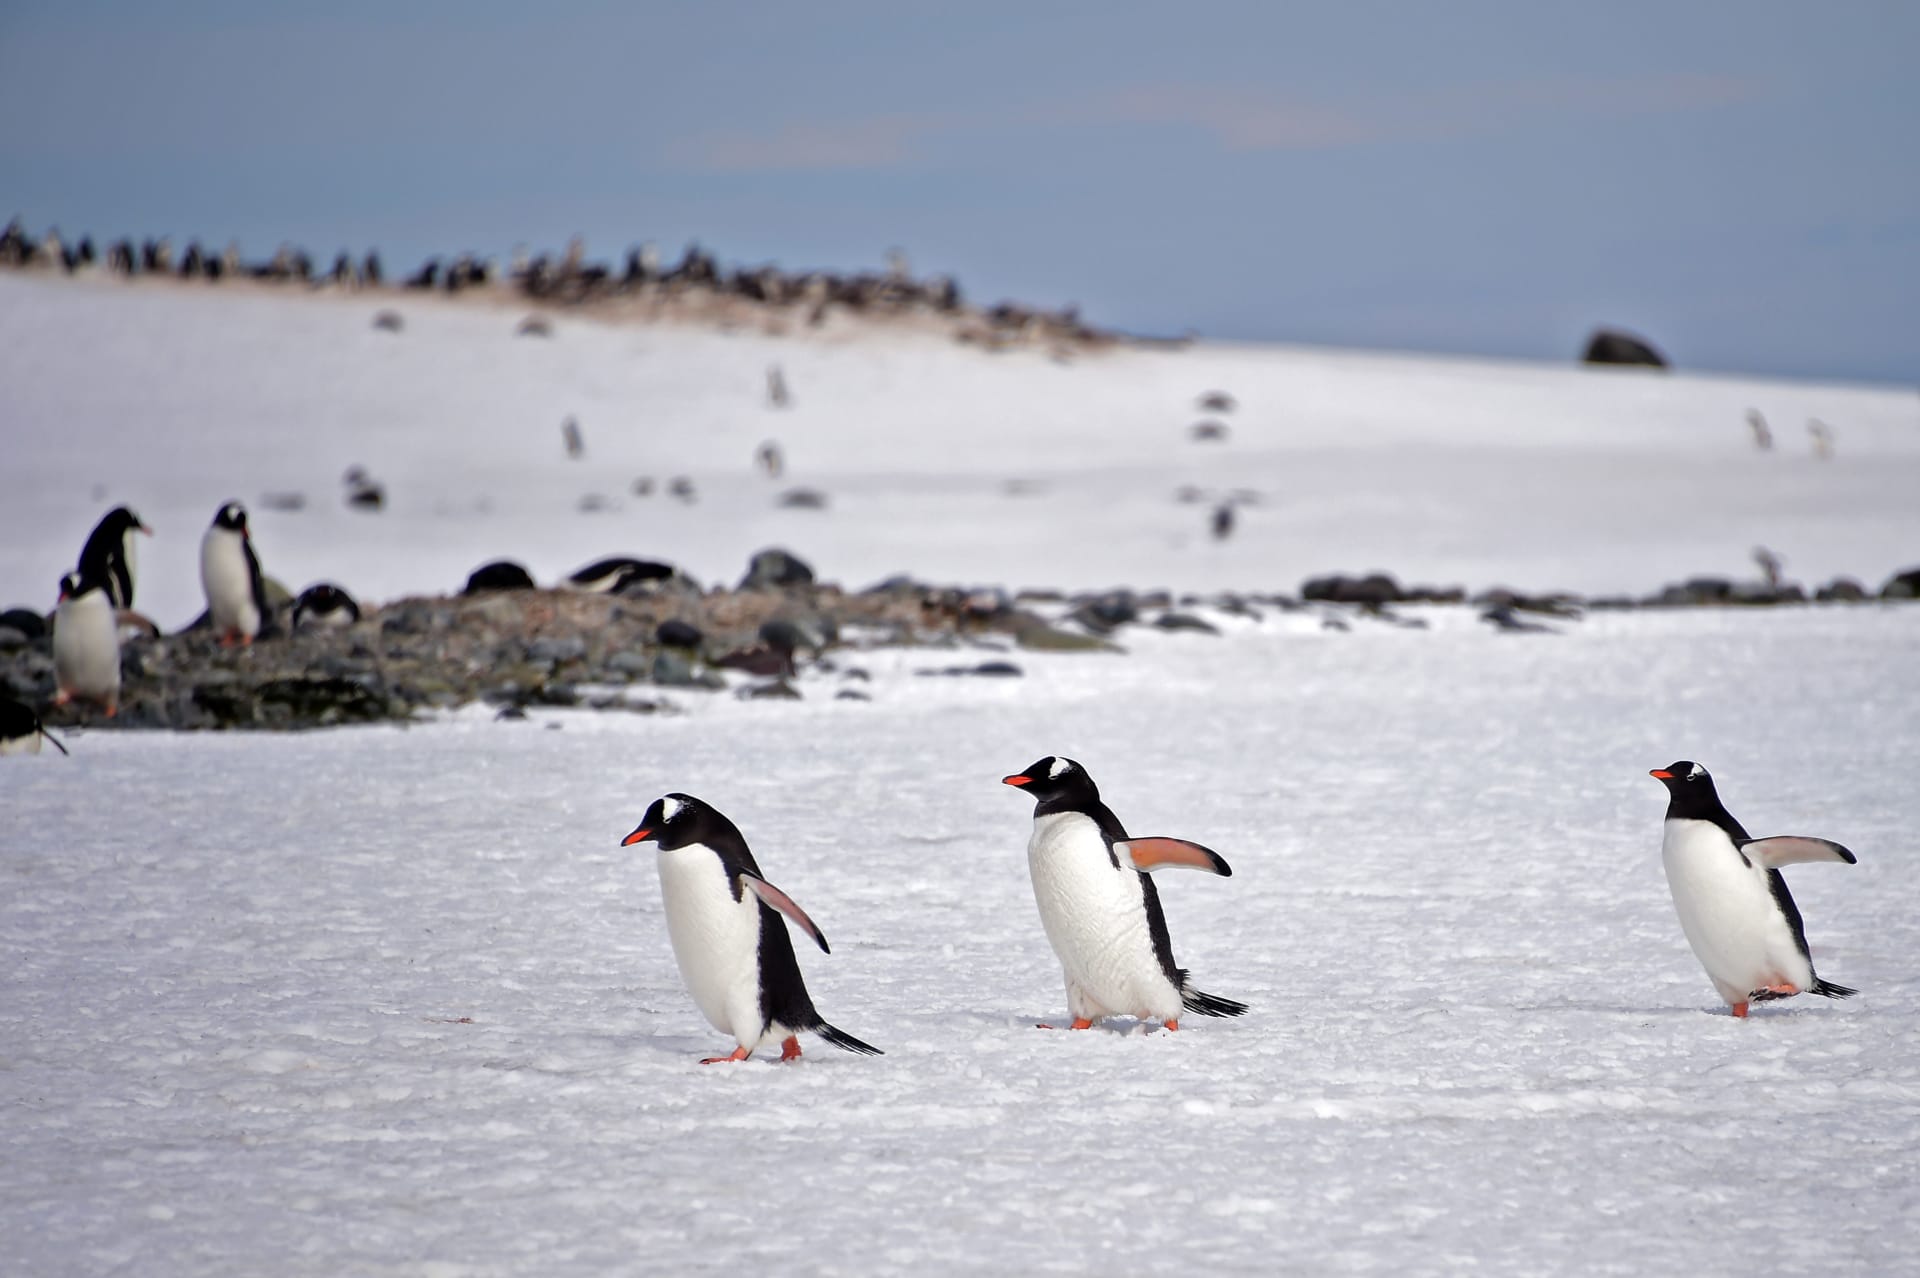 دراسة: مستعمرات البطريق في القطب الجنوبي انخفضت بأكثر من 75٪ على مدار 50 عامًا